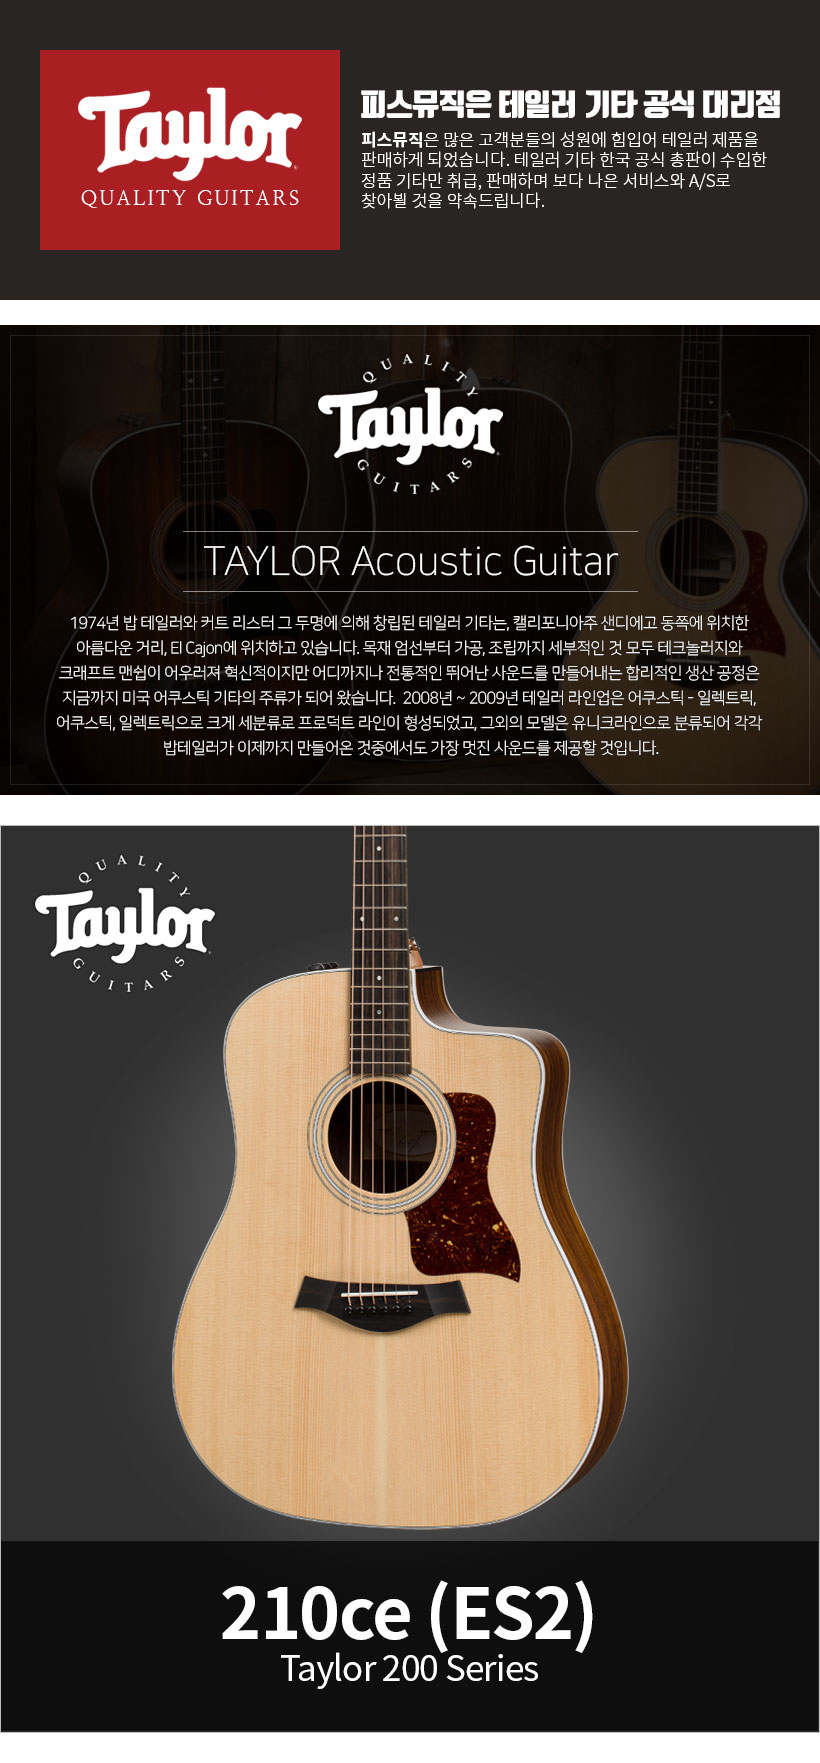 TAYLOR 어쿠스틱 기타 210ce(ES2)